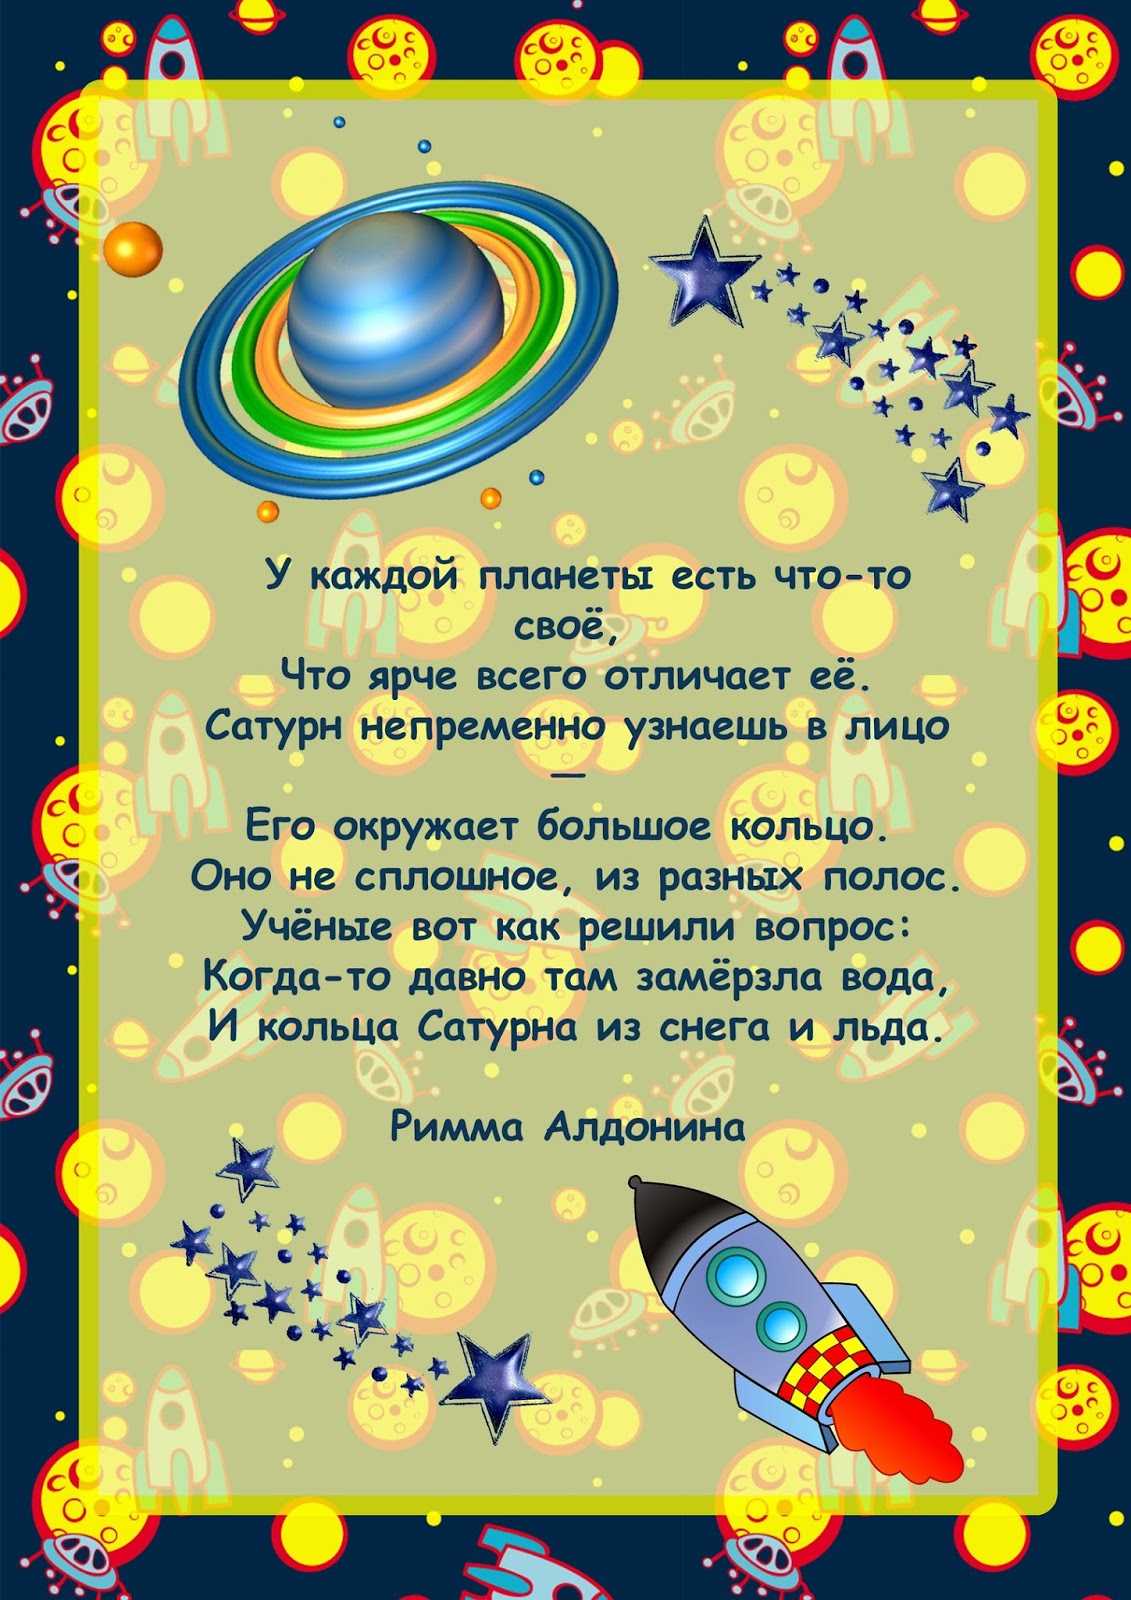 Детские стихи про космос, планеты, звезды, созвездия, кометы, астрономию